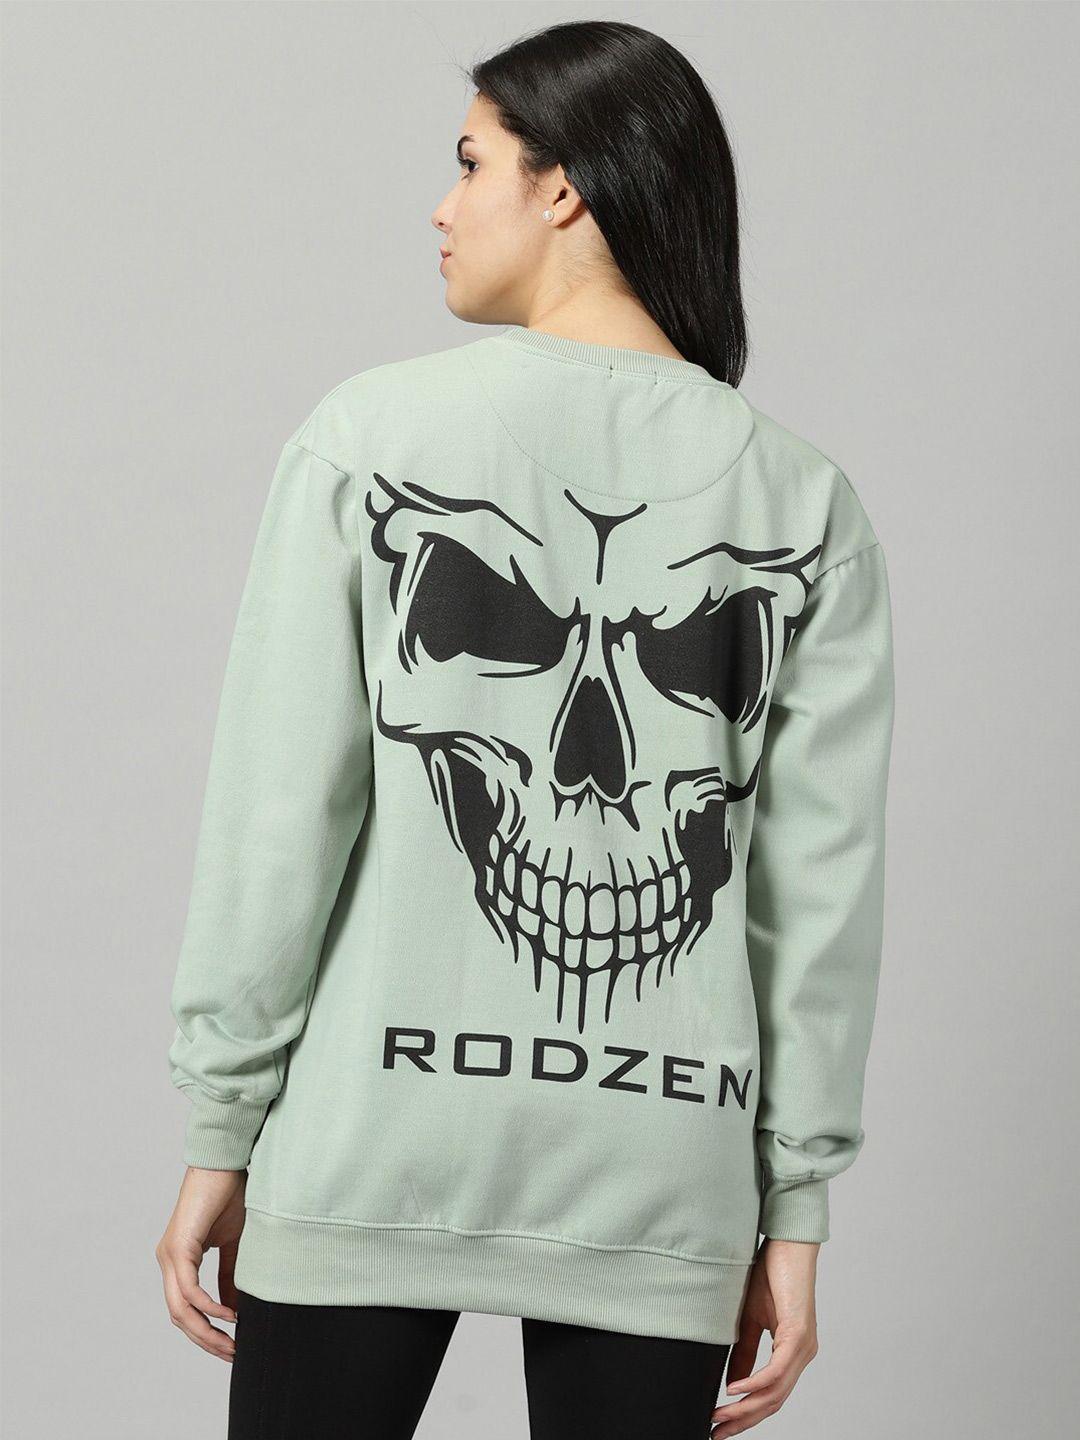 rodzen printed fleece pullover sweatshirt